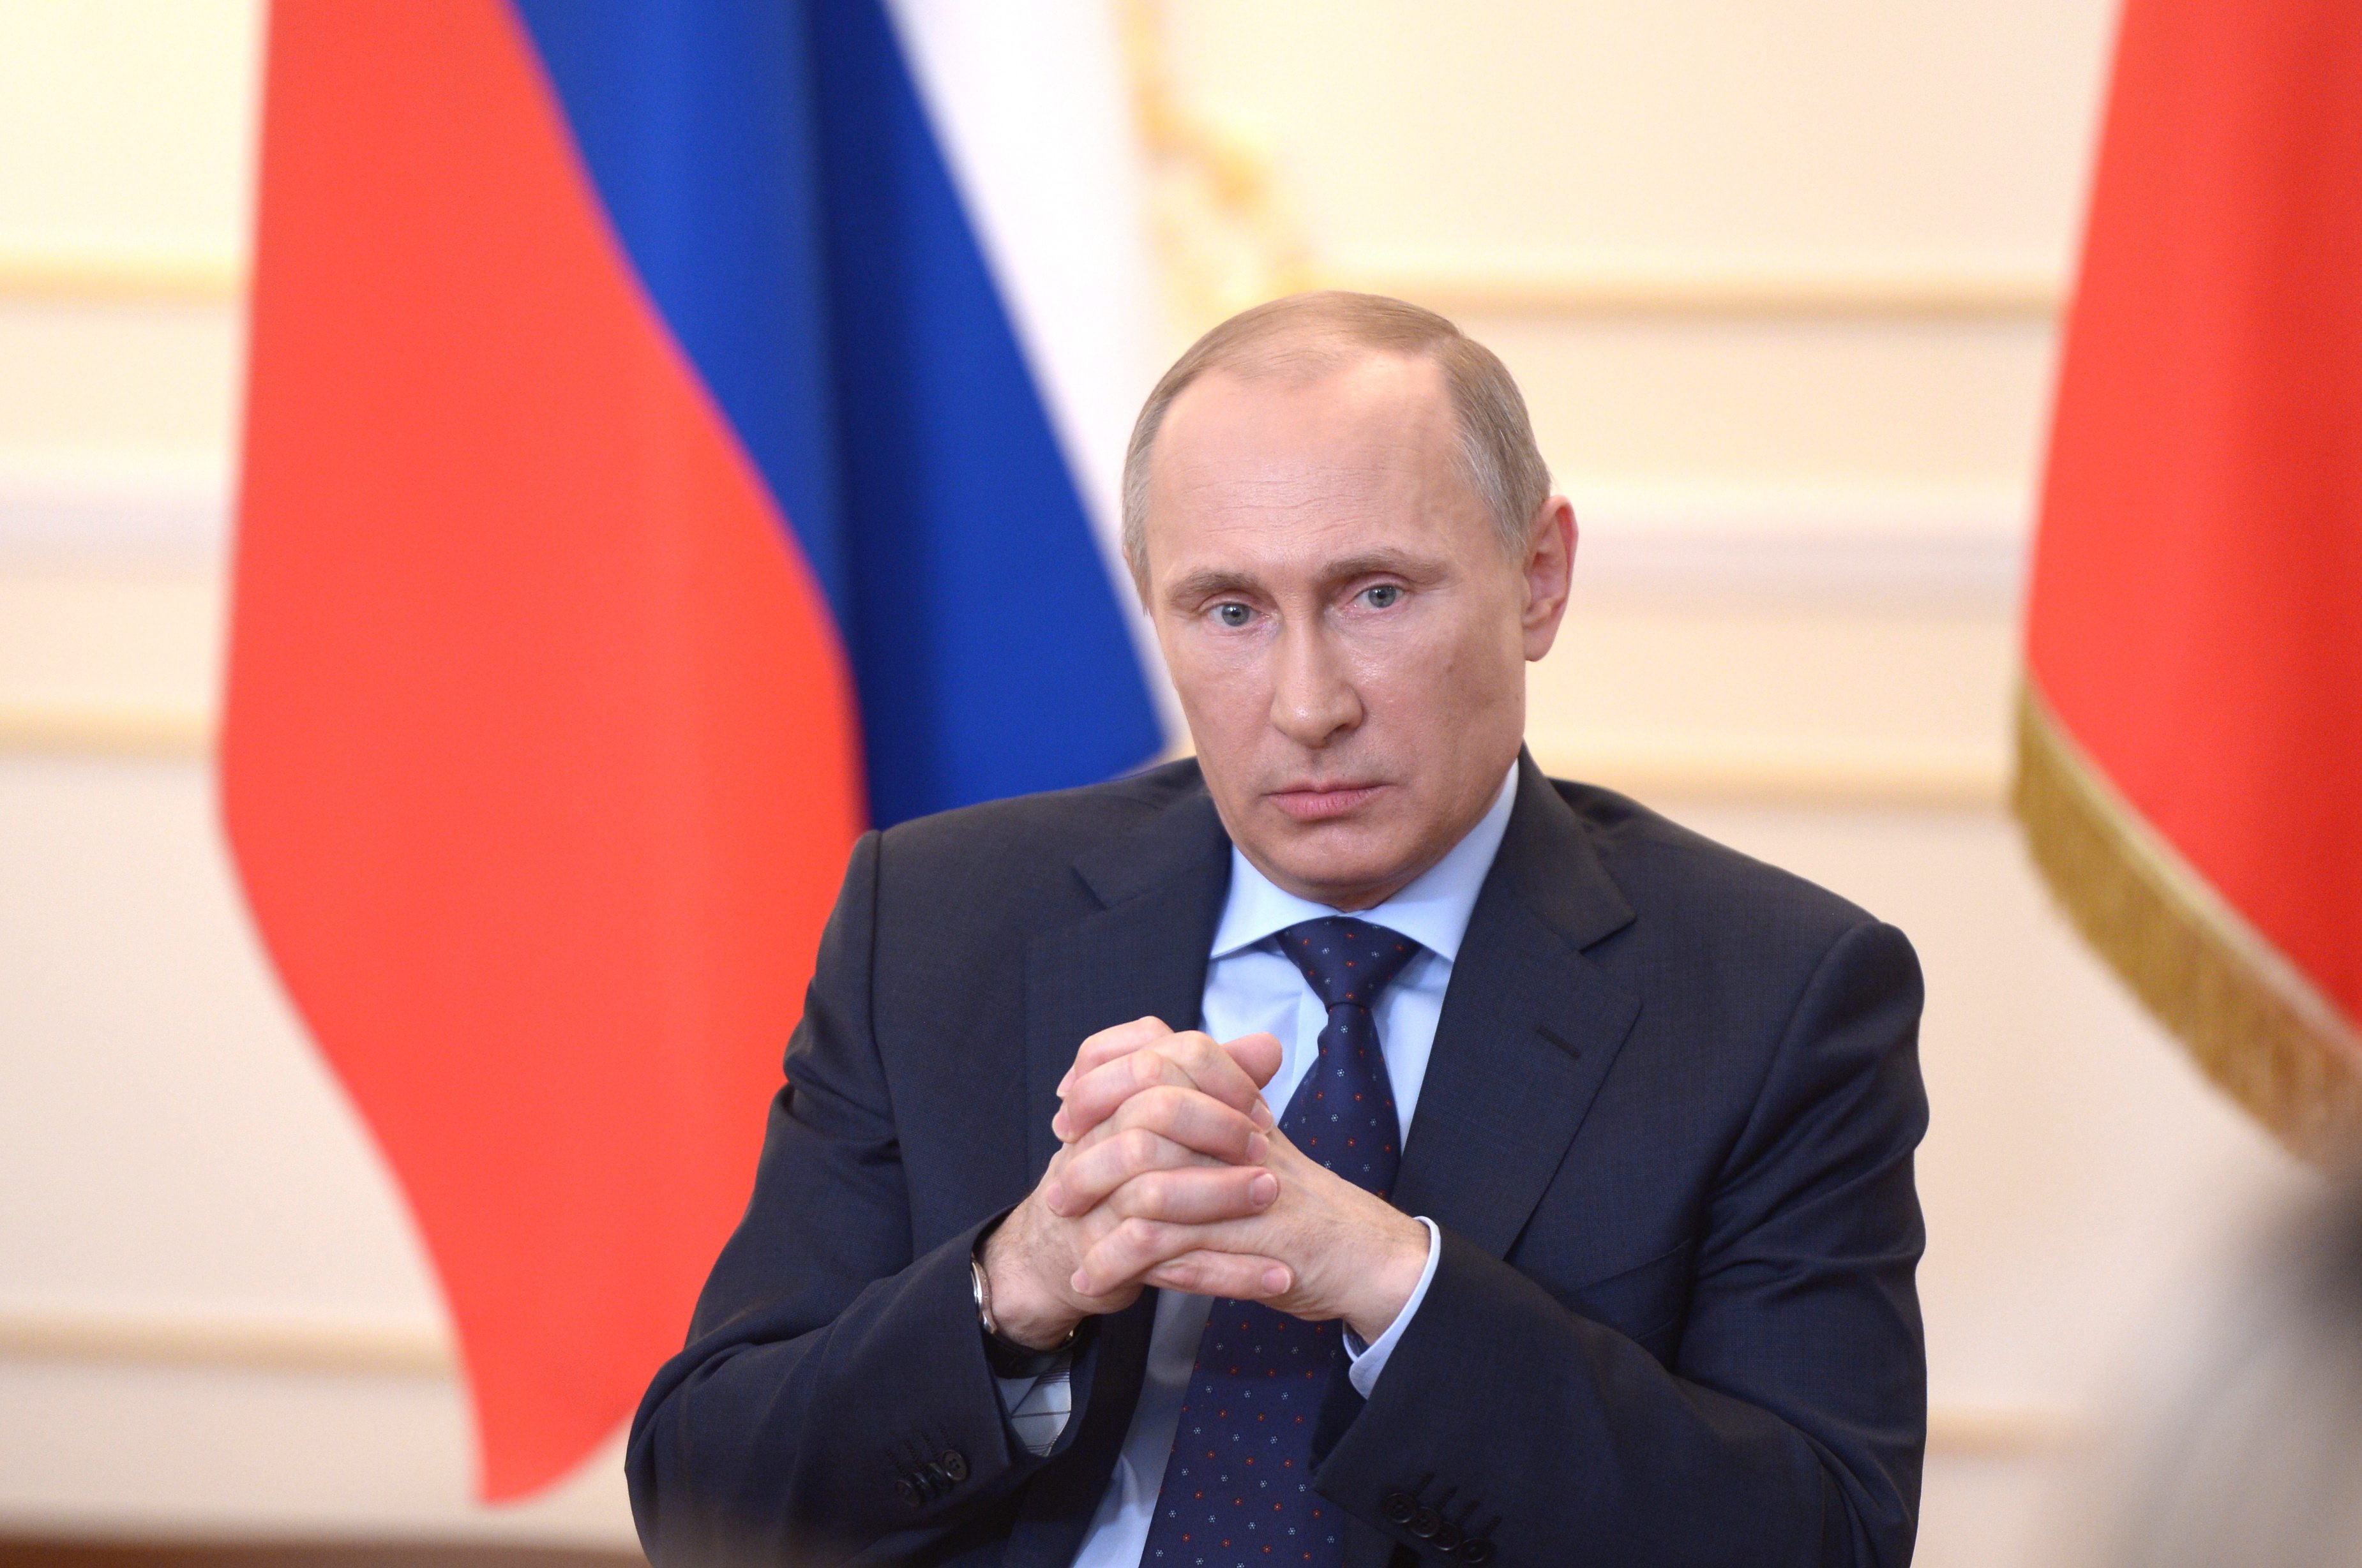 Според Държавния департамент на САЩ Путин е говорил измислици. Според Русия това е дело на САЩ